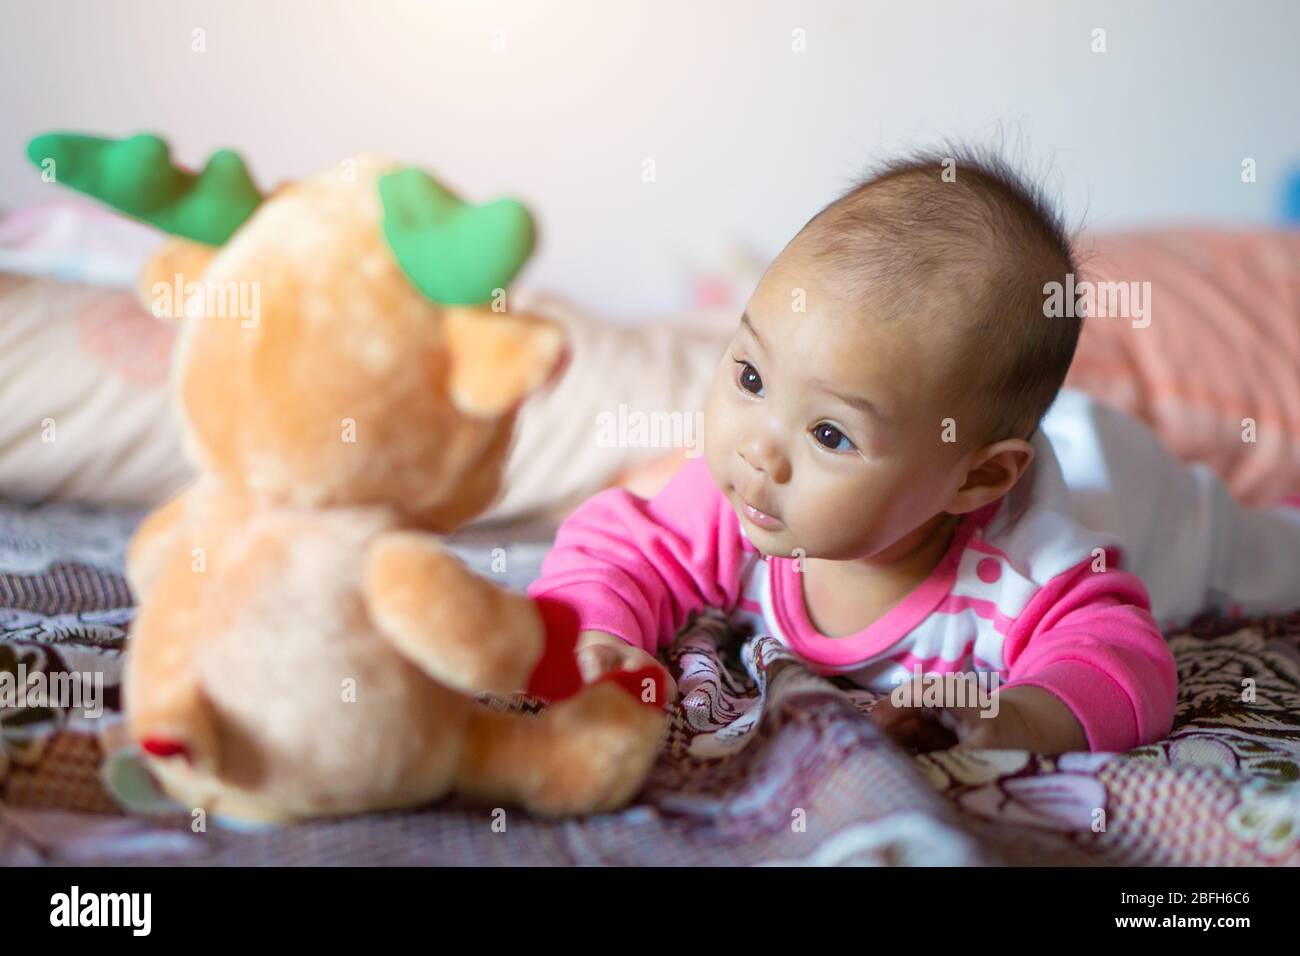 Ein 6 Monate altes asiatisches Mädchen lächelt und genießt seine Puppe. Stockfoto